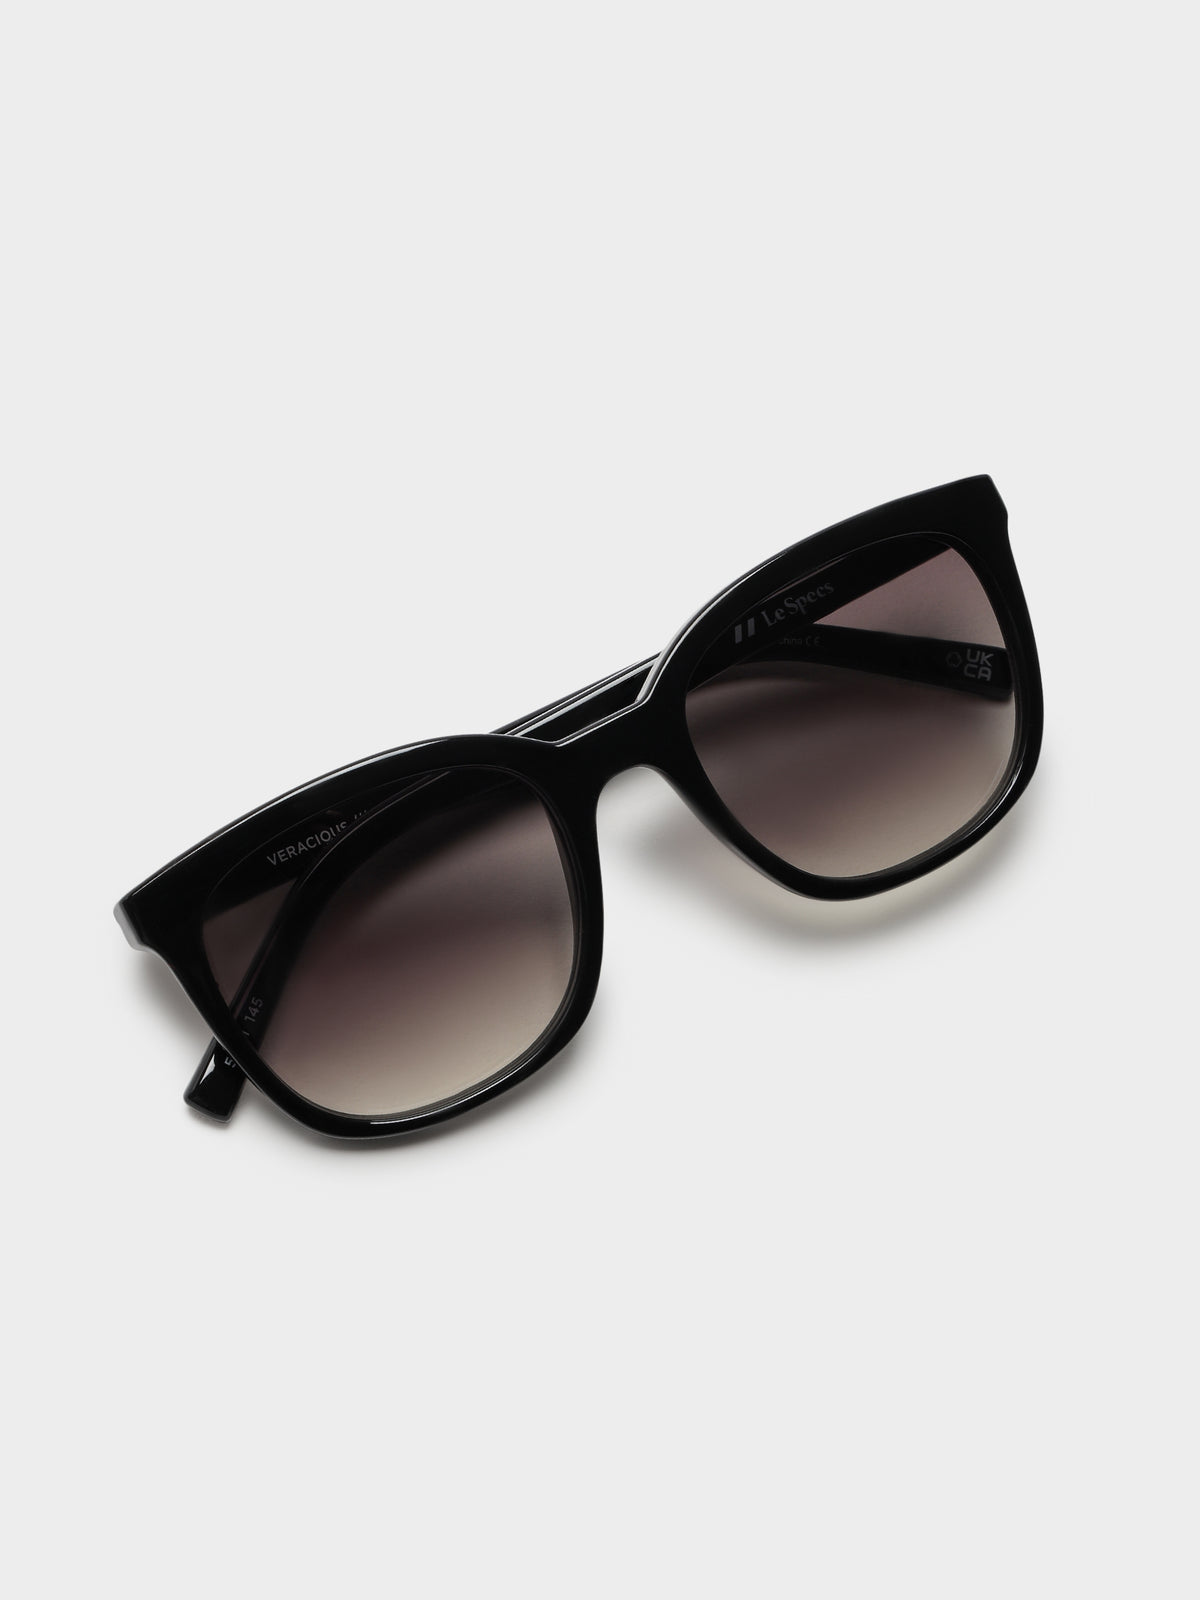 Veracious Sunglasses in Black